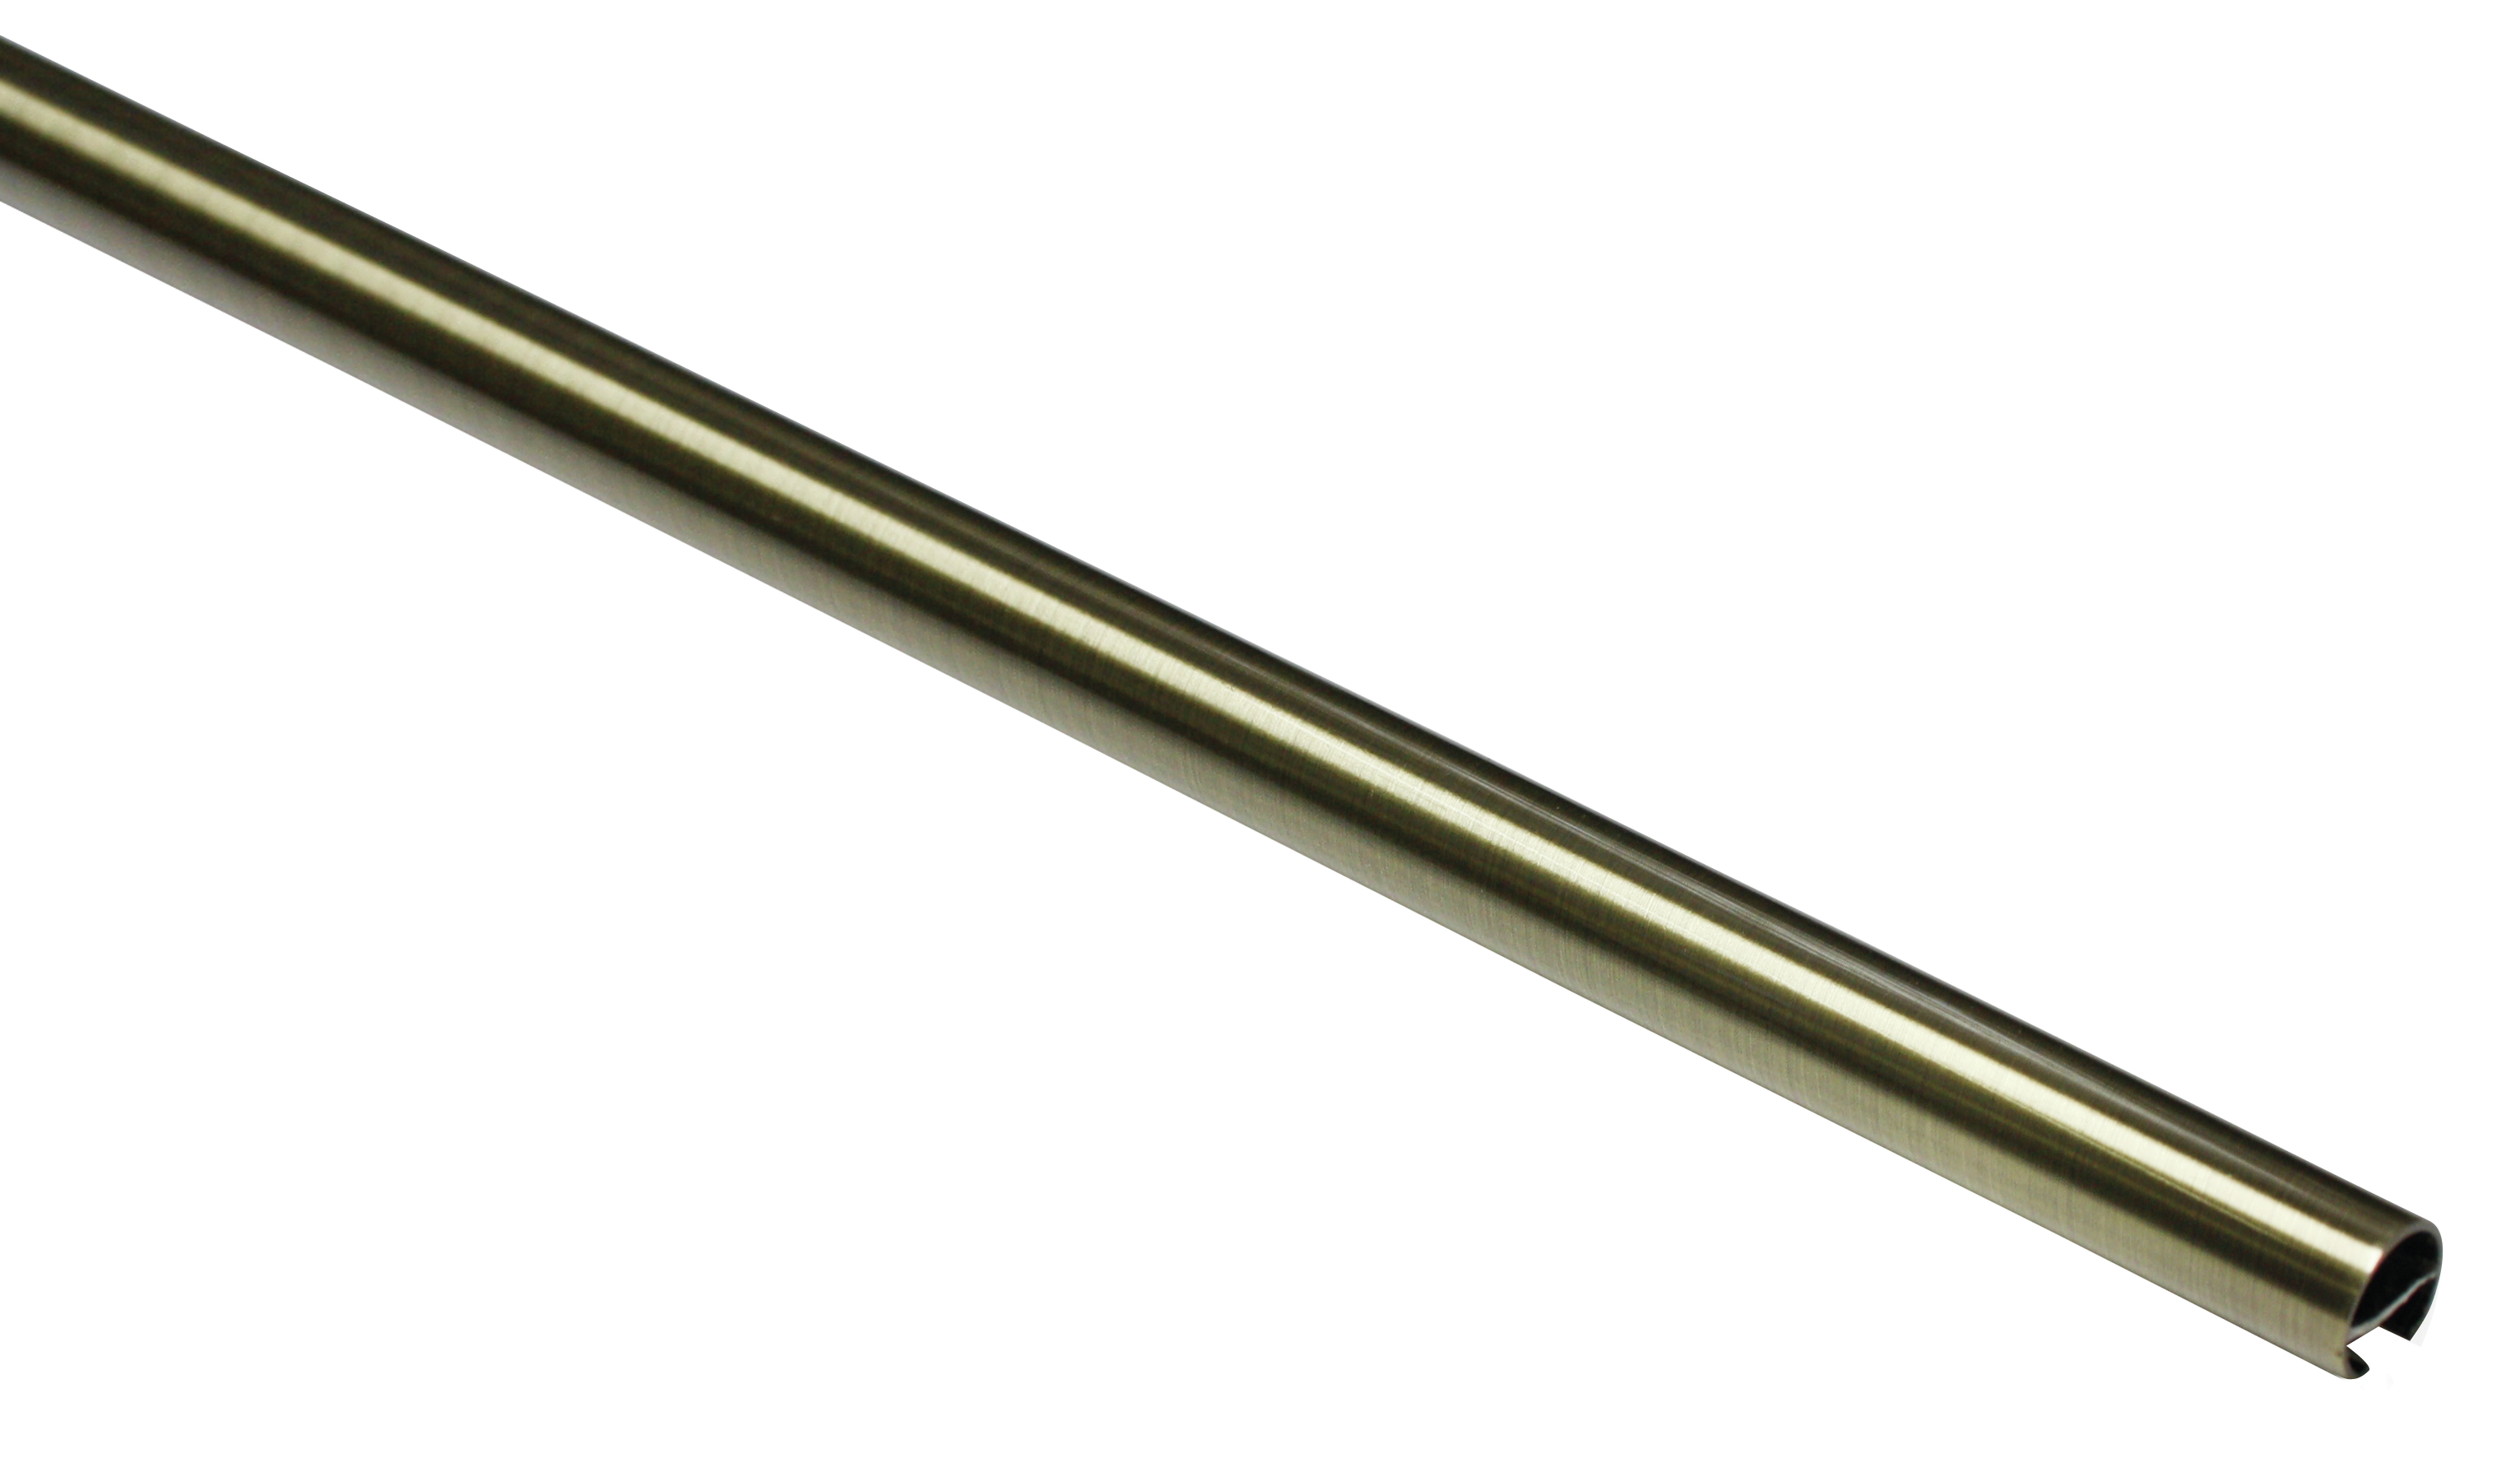 Záclonová tyč s drážkou Memphis 16/120cm, zlatá antika (Kov, lze použít jako tyč na kroužky nebo profil na jezdce, od délky 200cm doporučujeme použít třetí nosník.)